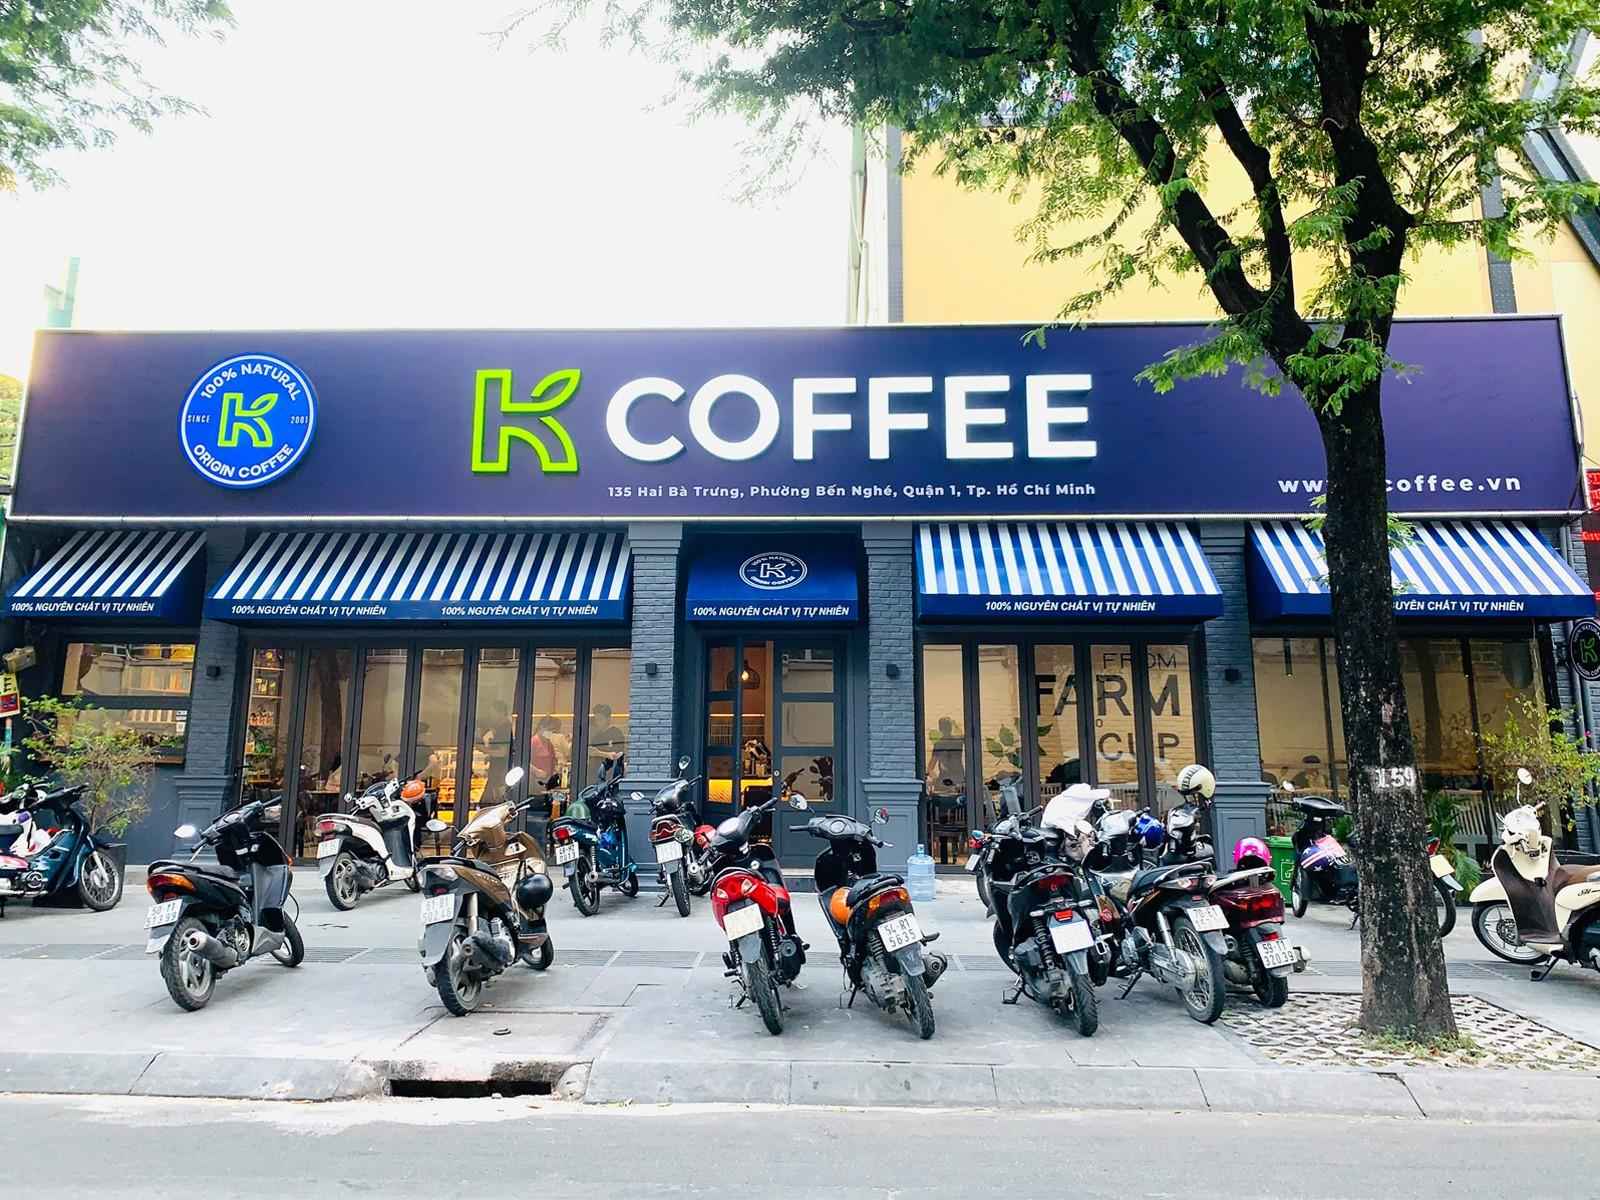 K COFFEE 135 HAI BÀ TRƯNG